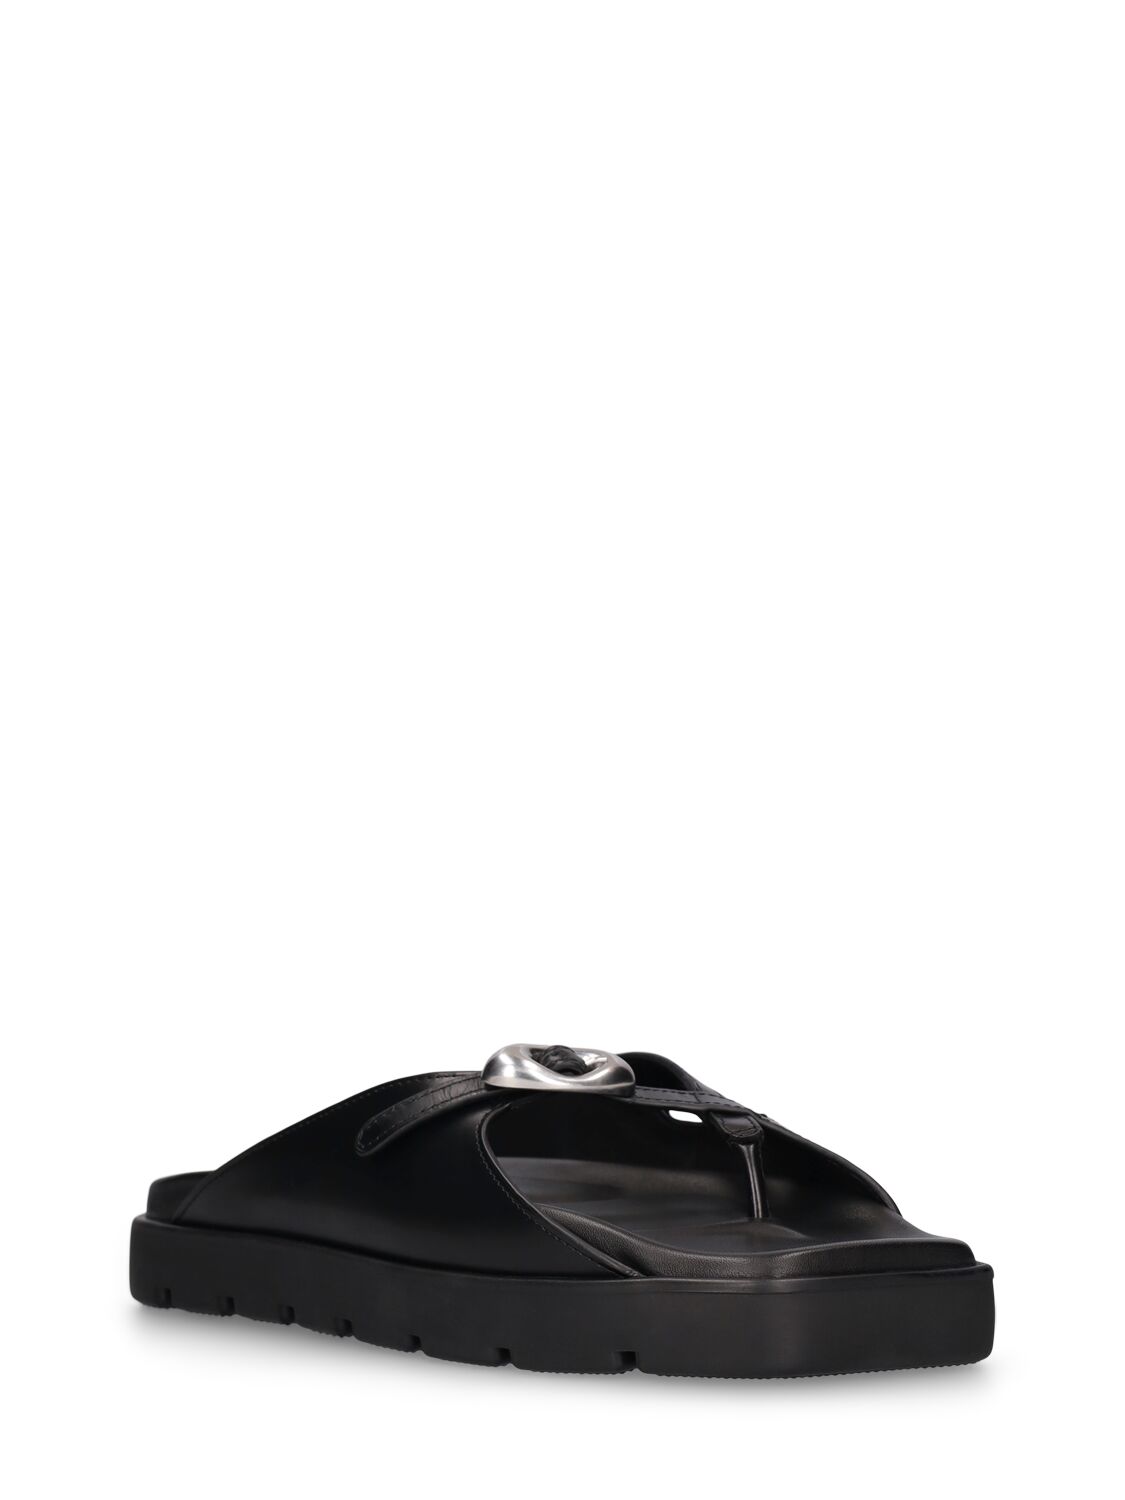 Shop Alexander Wang 20mm Dome Leather Flatform Sandals In Black